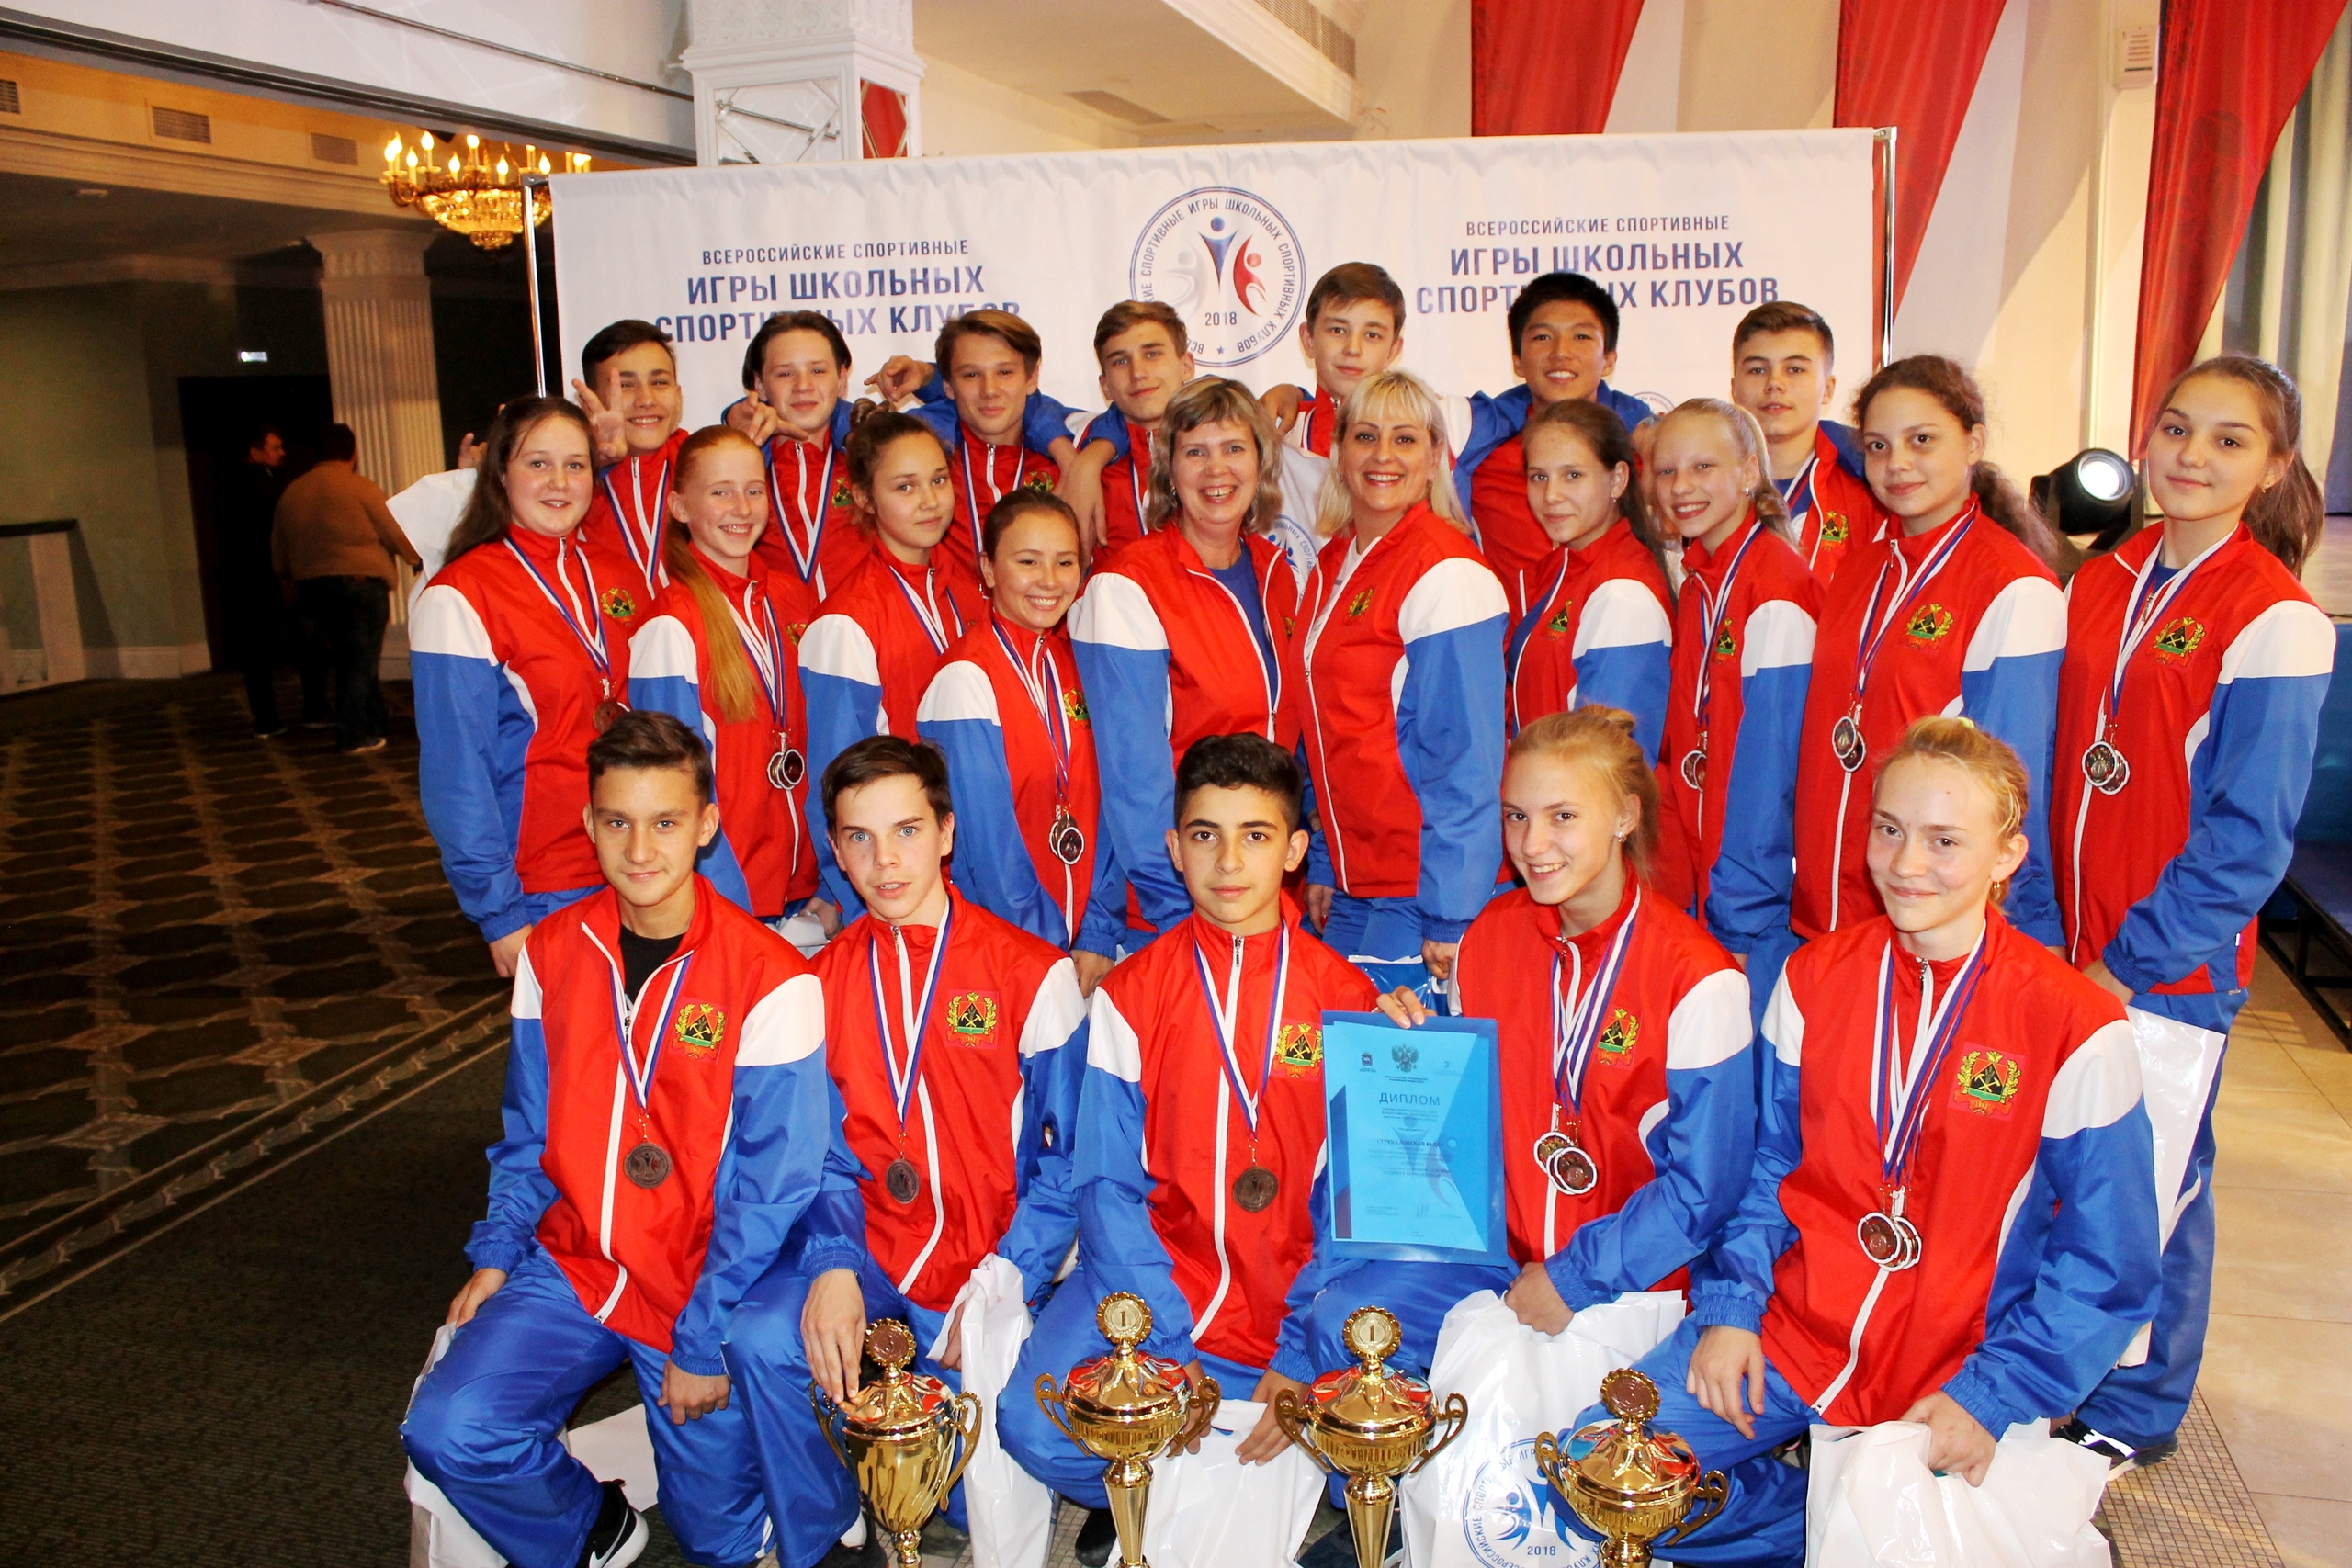 Кузбасская команда стала бронзовым призером Всероссийских спортивных игр школьных спортивных клубов